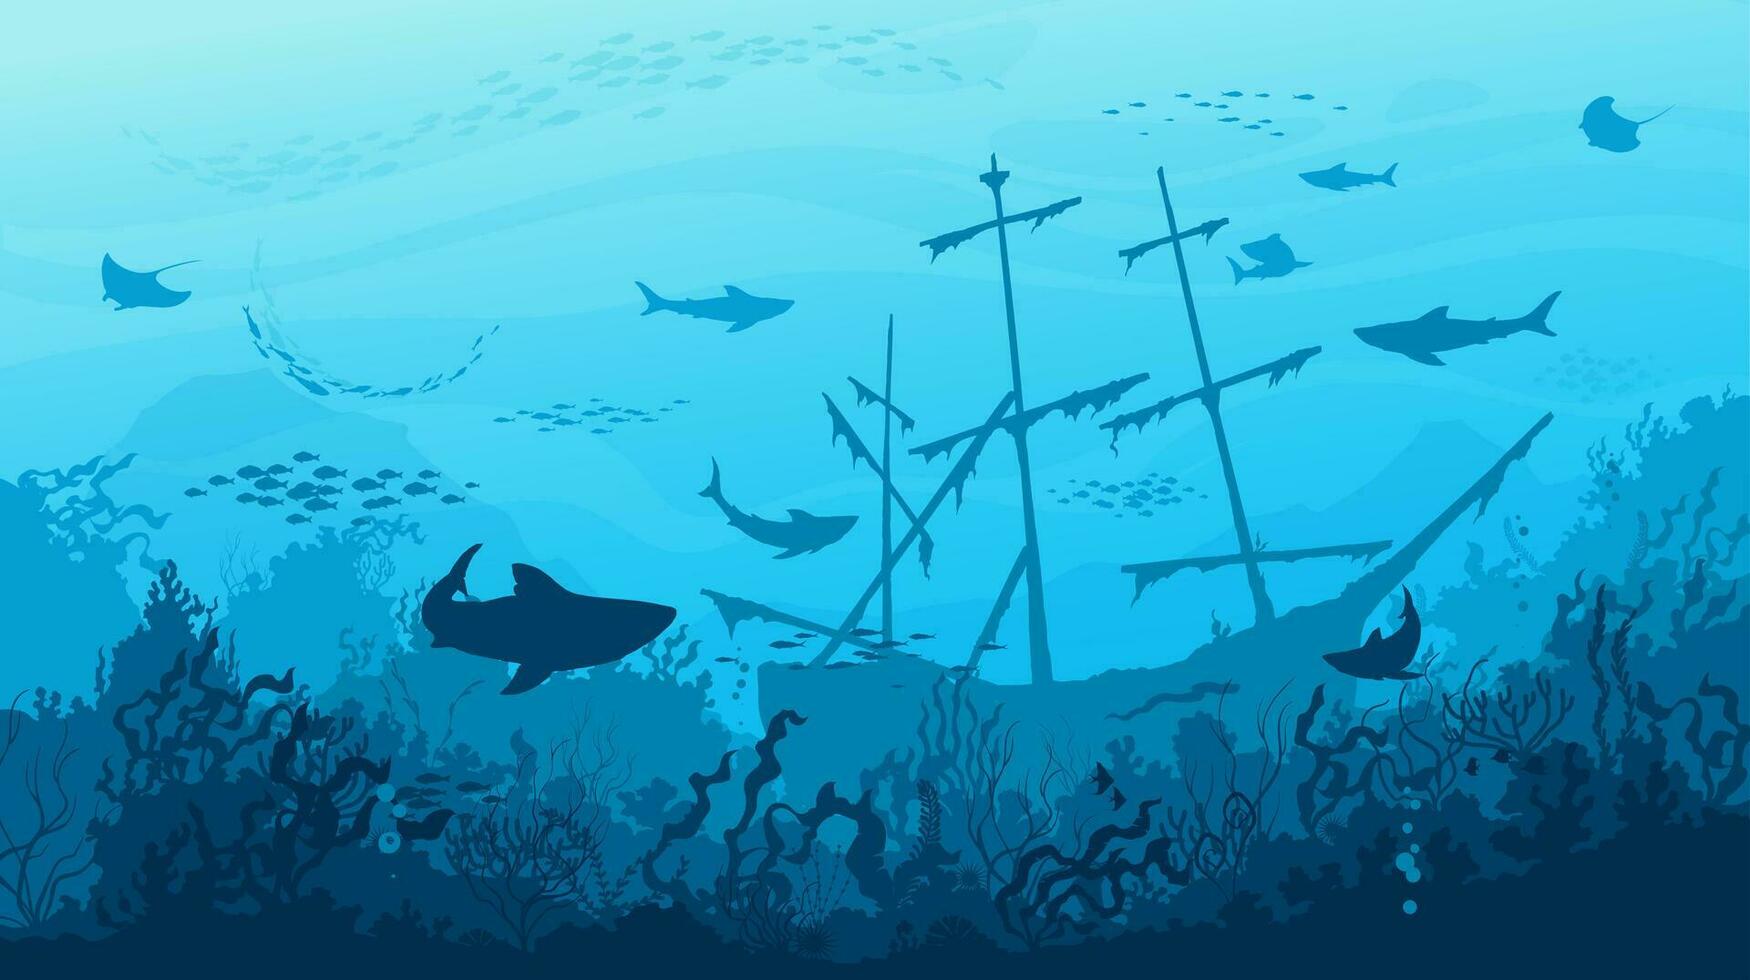 zee haaien, gezonken schip en vissen in onderwater- vector